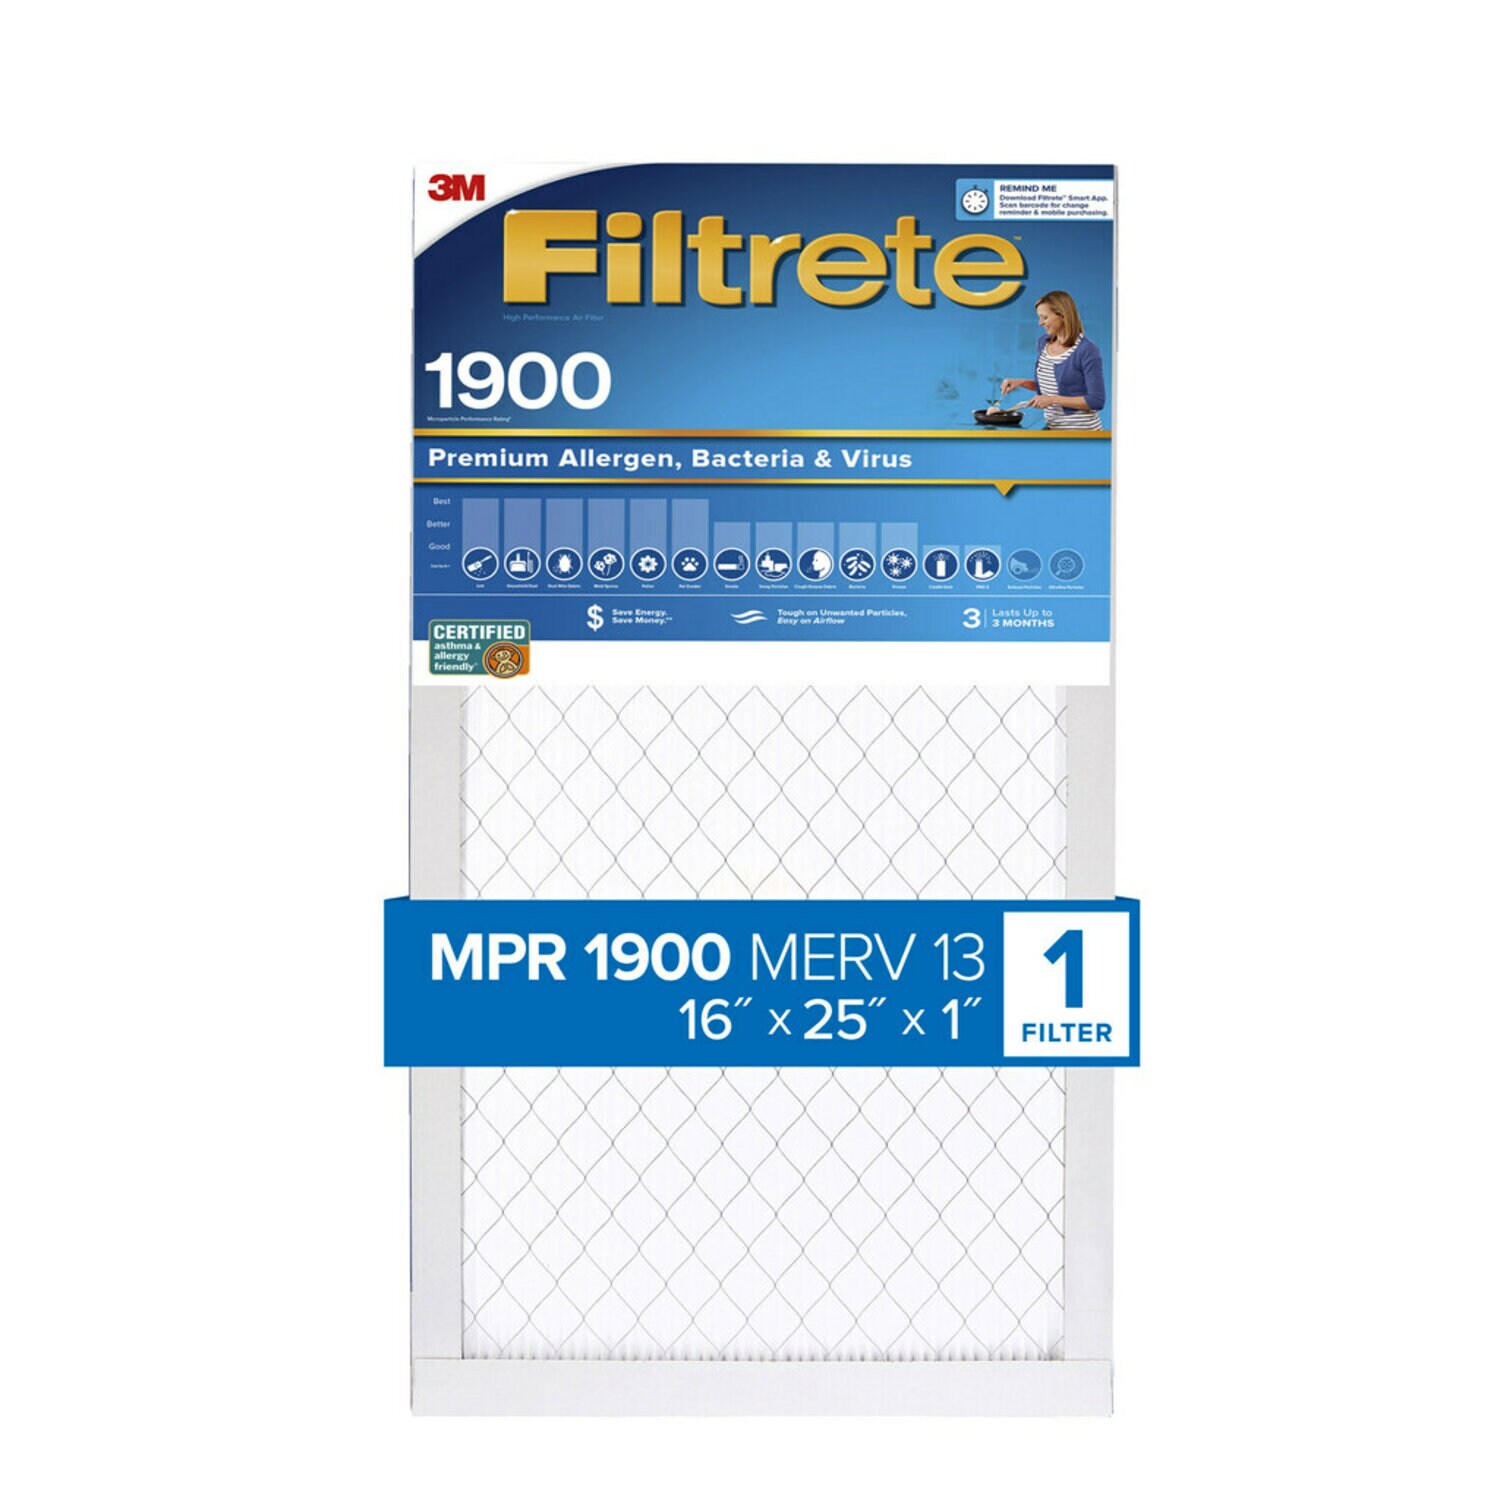 7100250953 - Filtrete High Performance Air Filter 1900 MPR UA01-4, 16 in x 25 in x 1 in (40.6 cm x 63.5 cm x 2.5 cm)